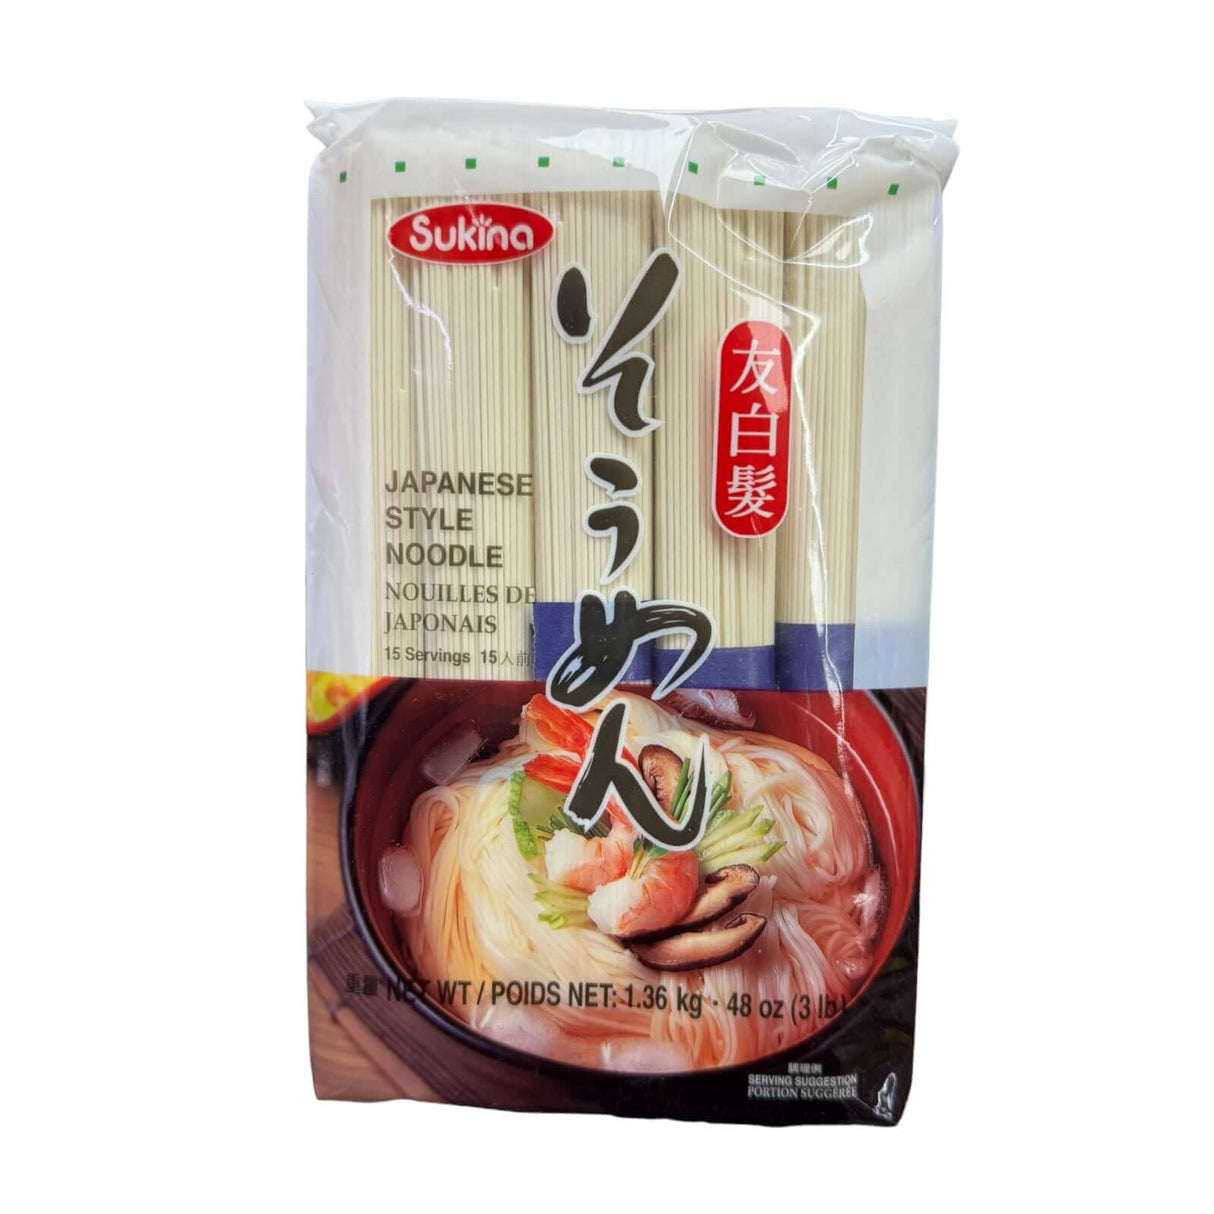 Sukina Japanese Style Noodle